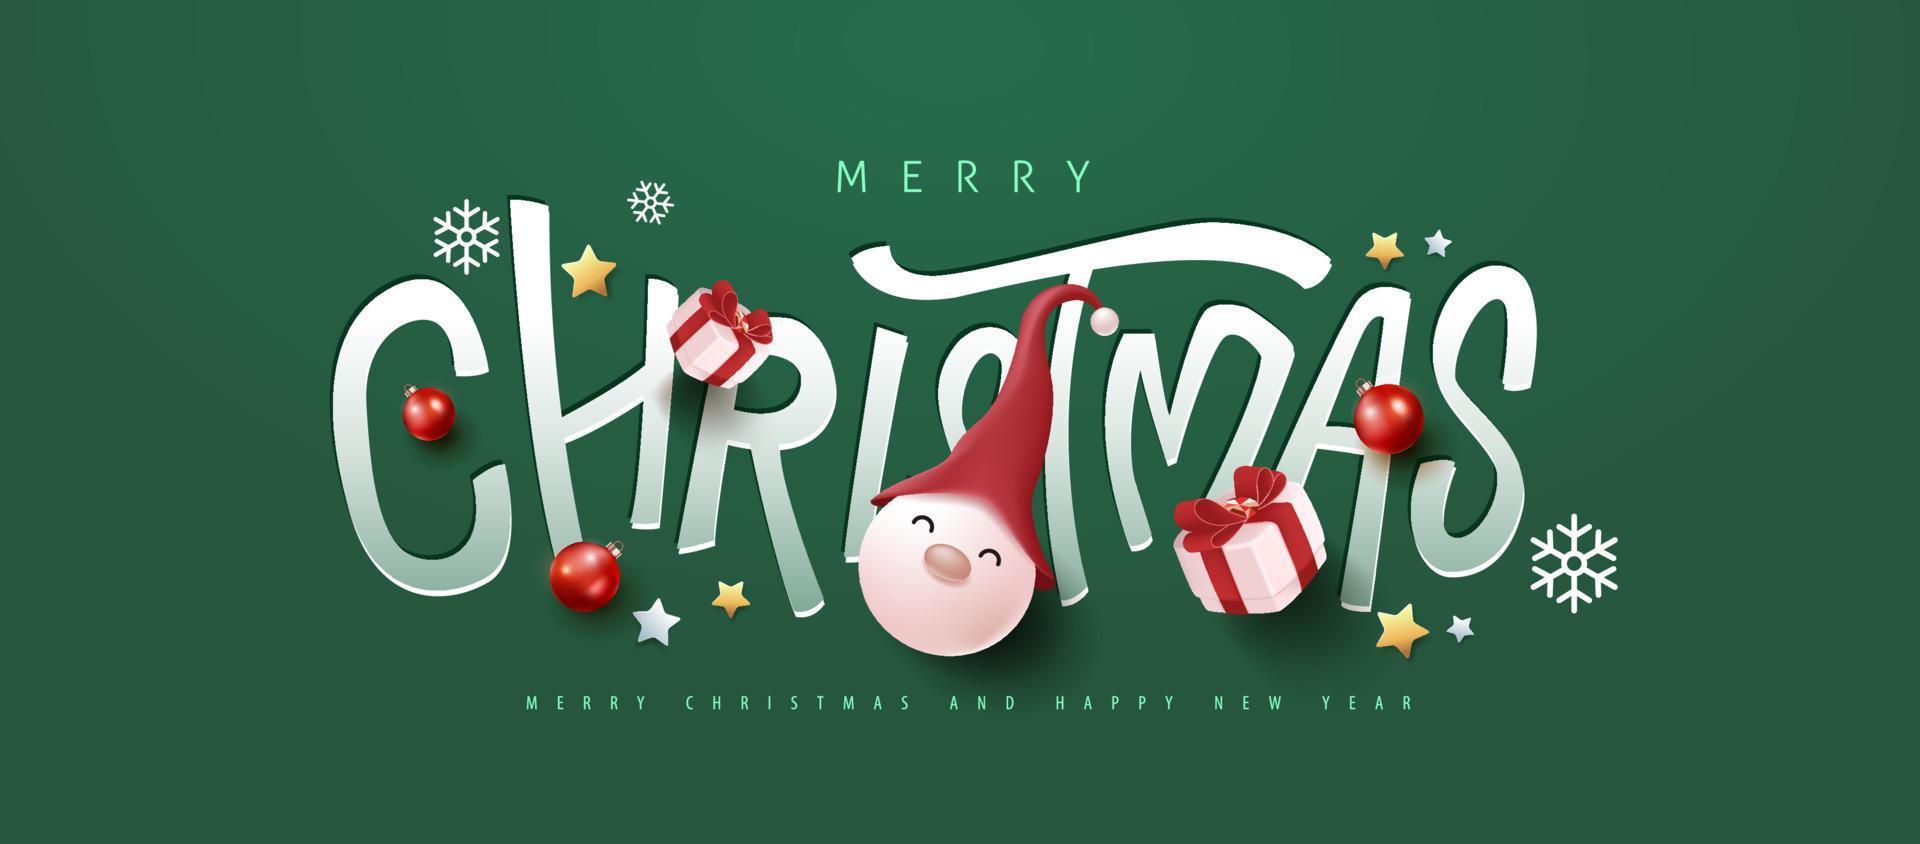 striscione di buon natale e felice anno nuovo con tipografia tagliata a carta e decorazioni festive vettore